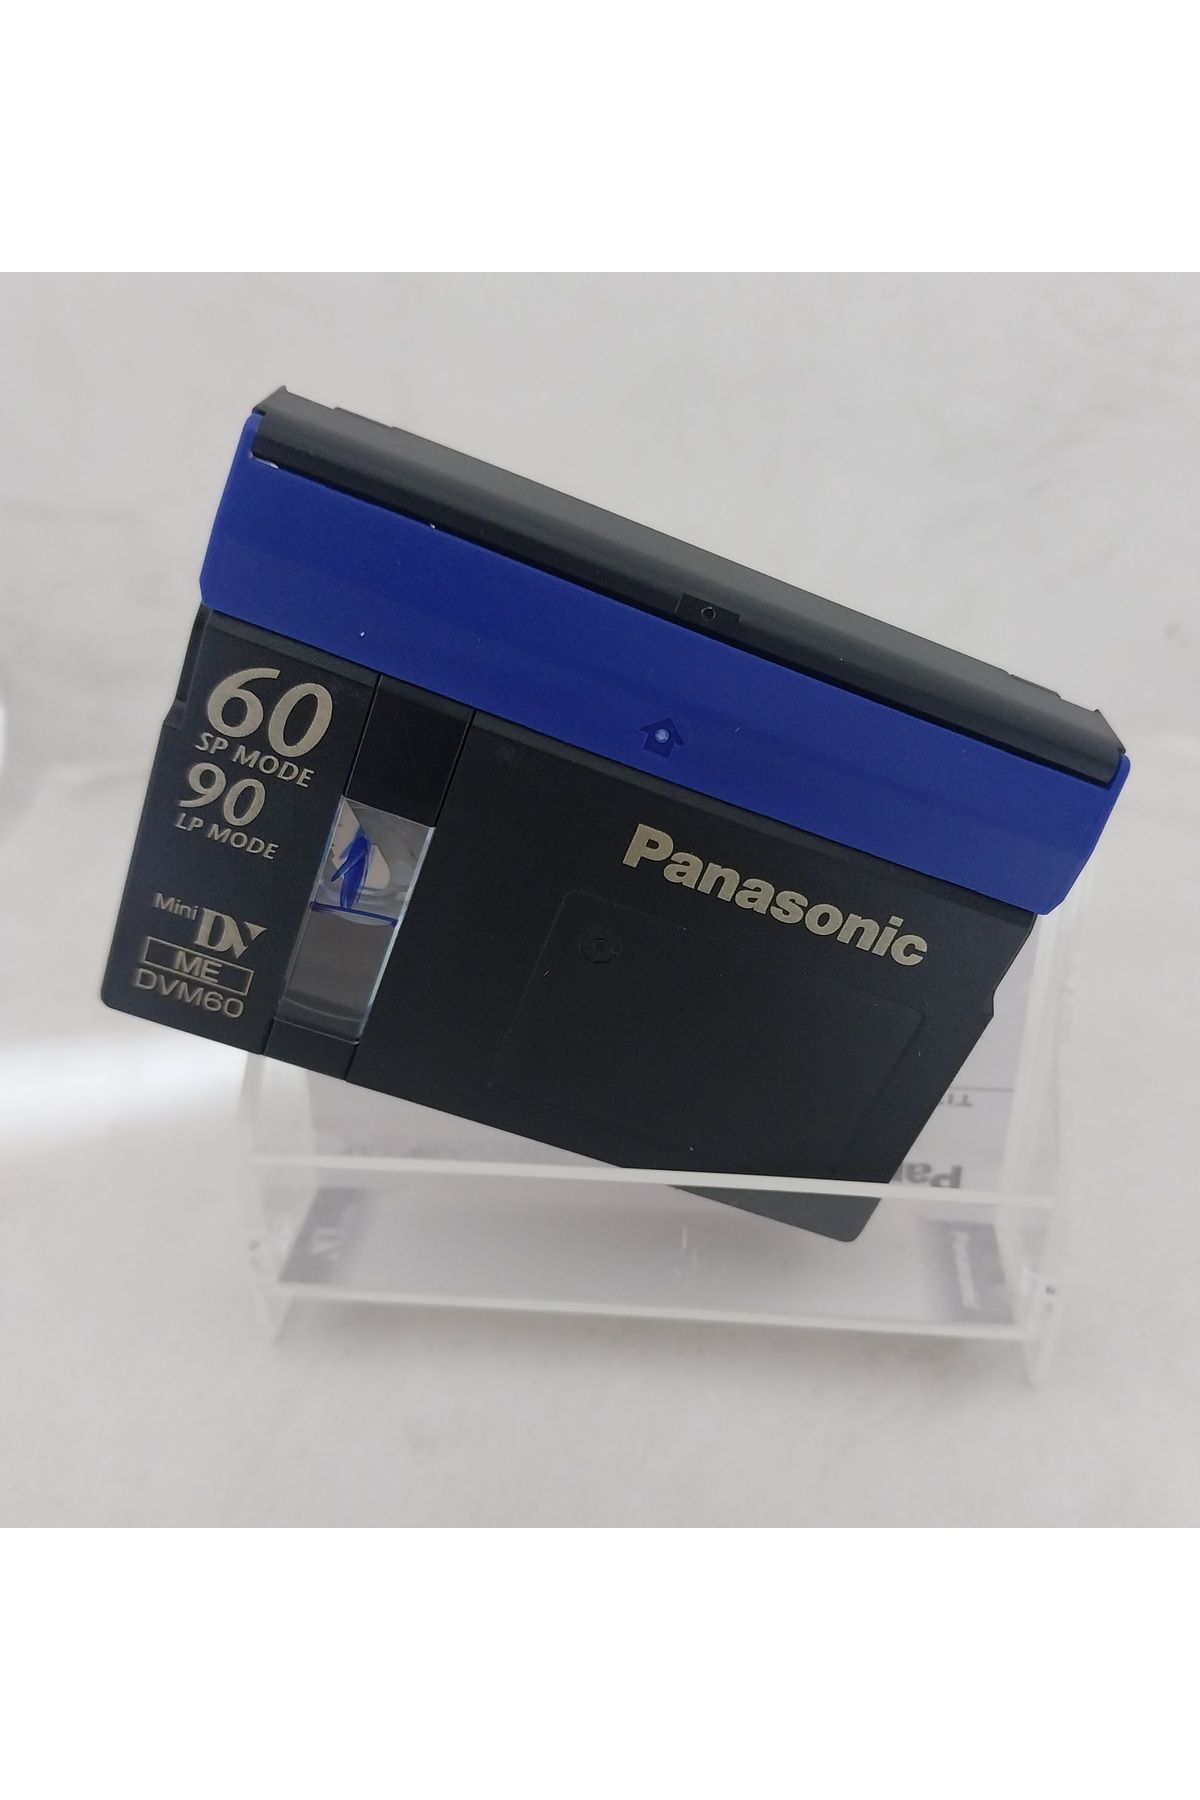 Raks Kamera Kaseti Panasonic Mini Dv  SP-60 LP-90